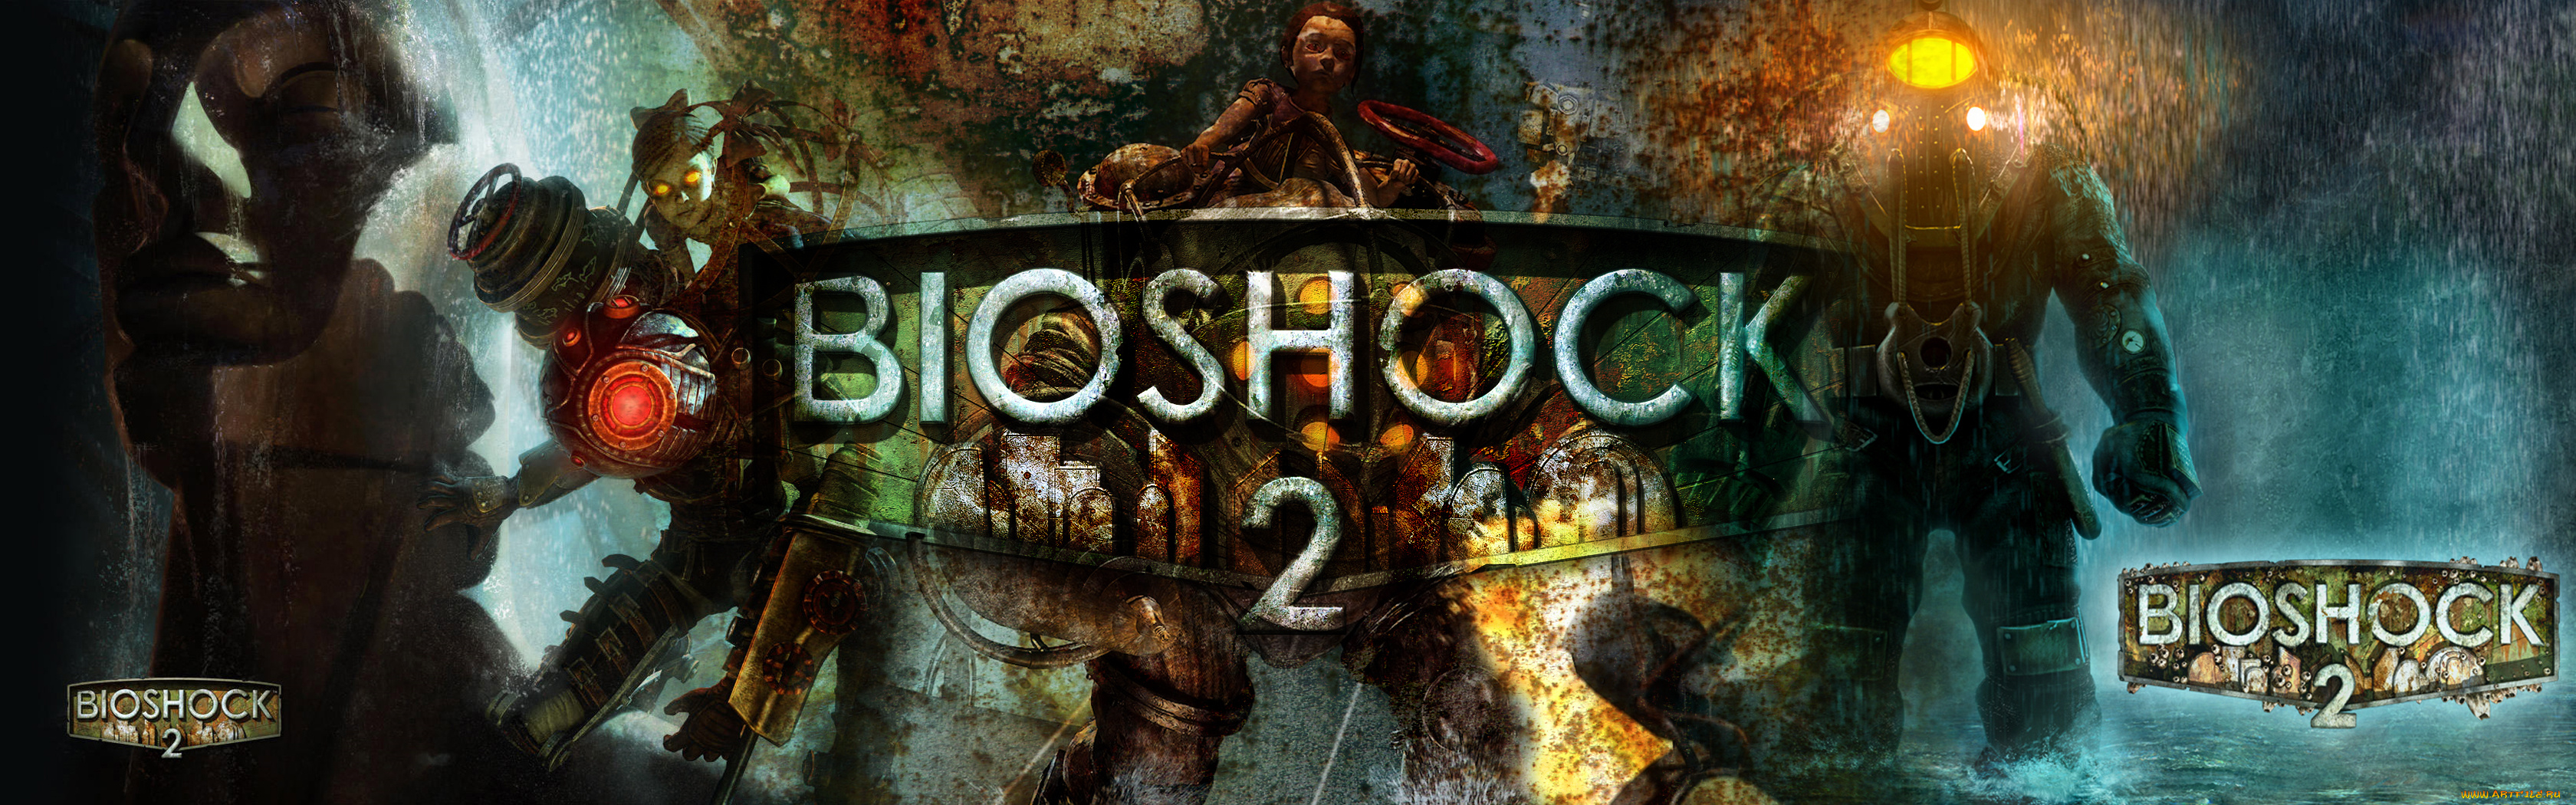 bioshock, видео, игры, sea, of, dreams, 2, игра